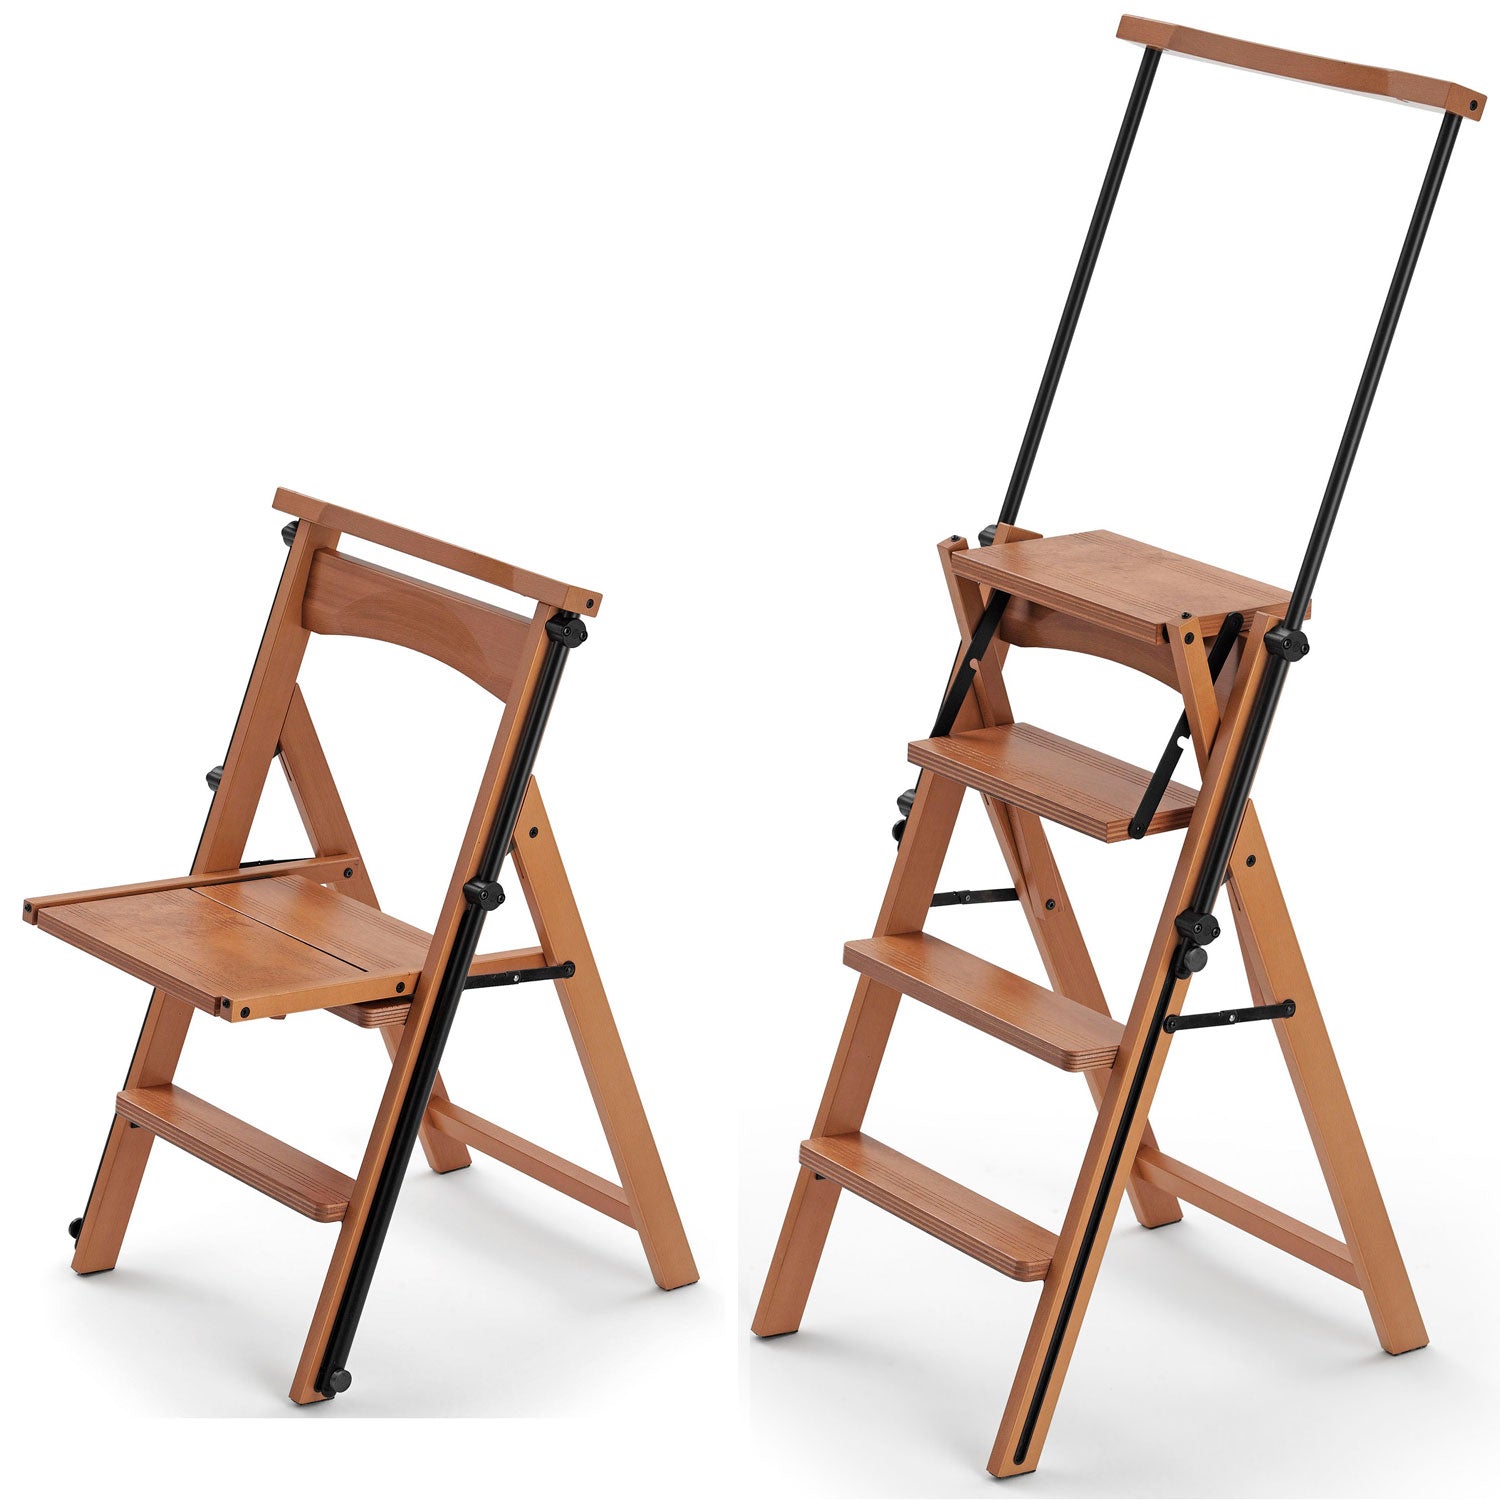 ELETTA - Leiter, Trittleiter, Trittleiter 4 stufen, umwandelbarer Stuhl, mit Sicherheitssystem, kirschfarben, 3